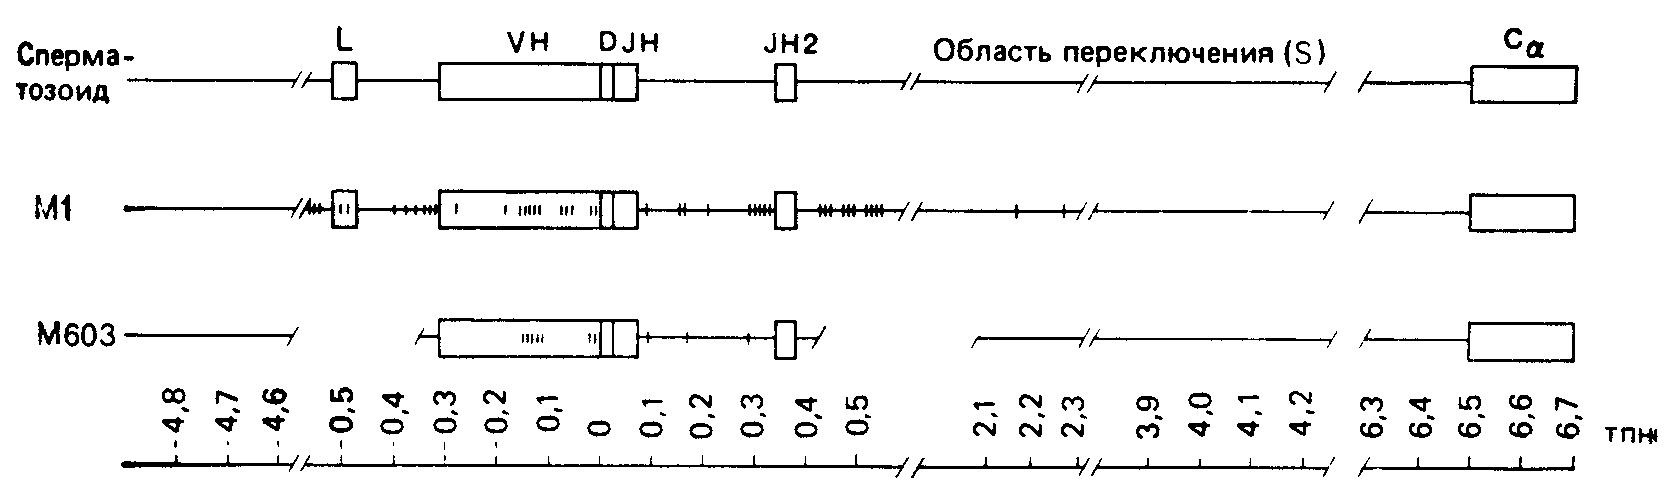 Распределение соматических мутаций в двух миеломных генах Vн